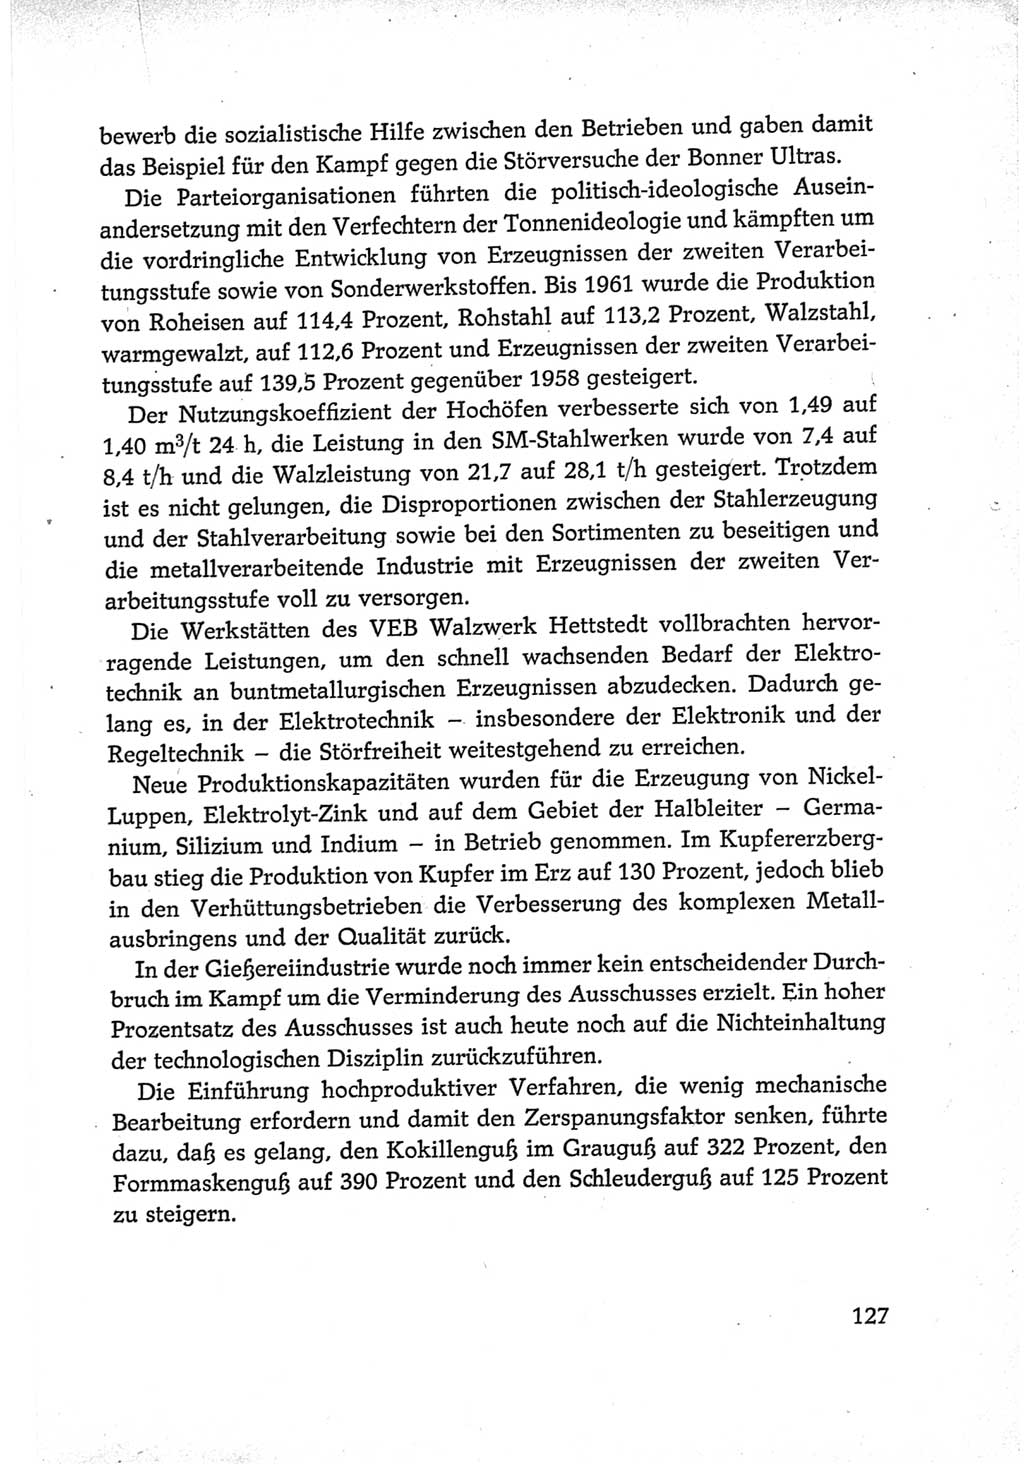 Protokoll der Verhandlungen des Ⅵ. Parteitages der Sozialistischen Einheitspartei Deutschlands (SED) [Deutsche Demokratische Republik (DDR)] 1963, Band Ⅳ, Seite 127 (Prot. Verh. Ⅵ. PT SED DDR 1963, Bd. Ⅳ, S. 127)